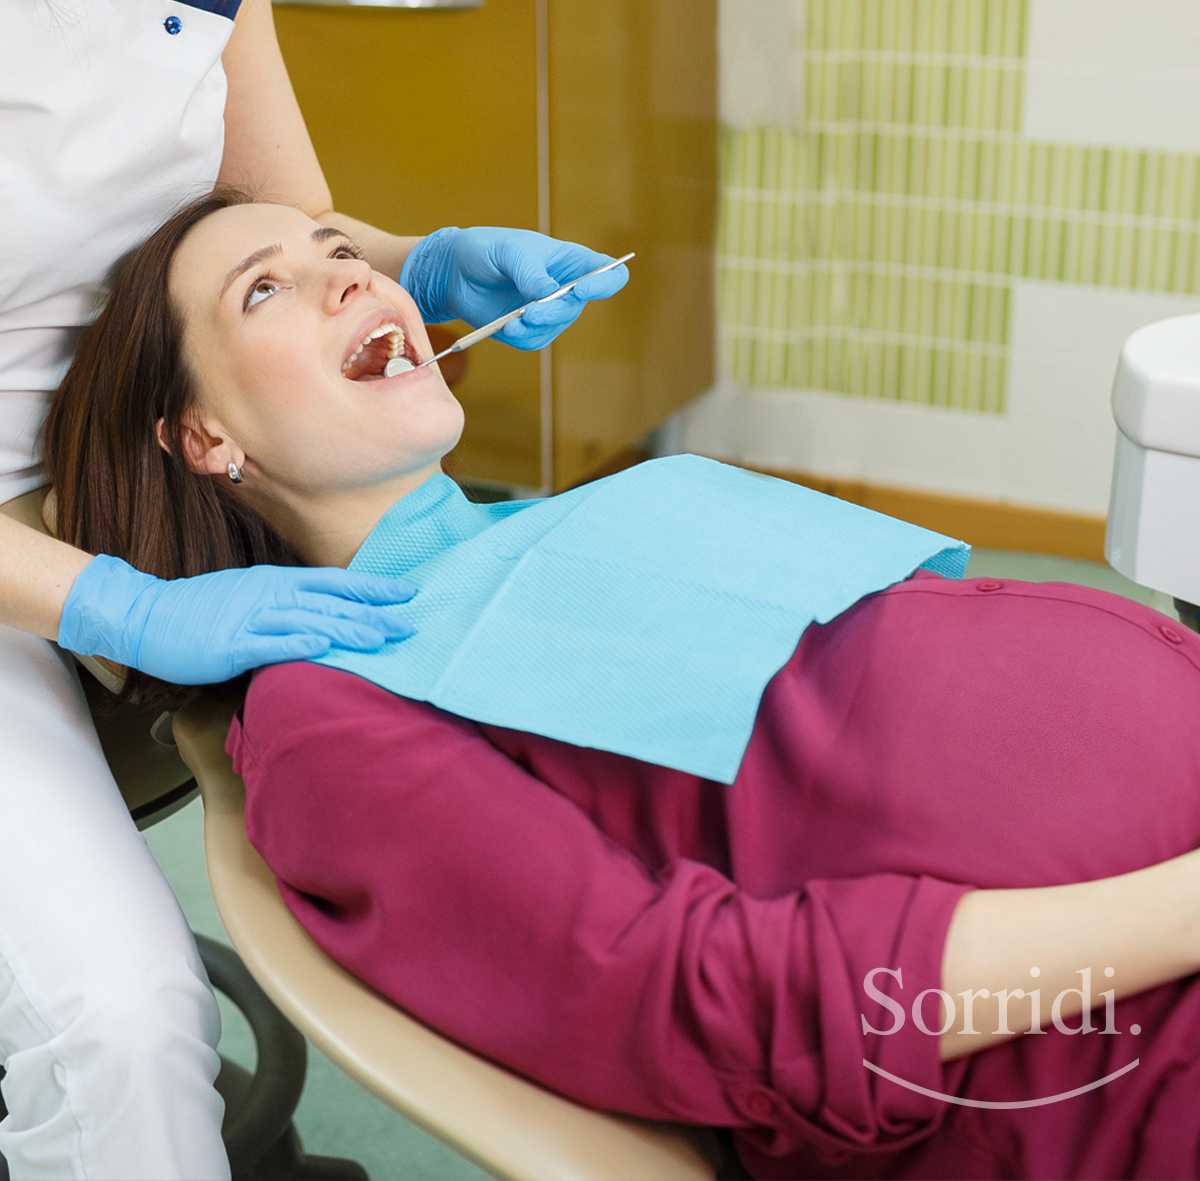 donne-in-gravidanza-dentista-sorridi-ch-magazine-locarno